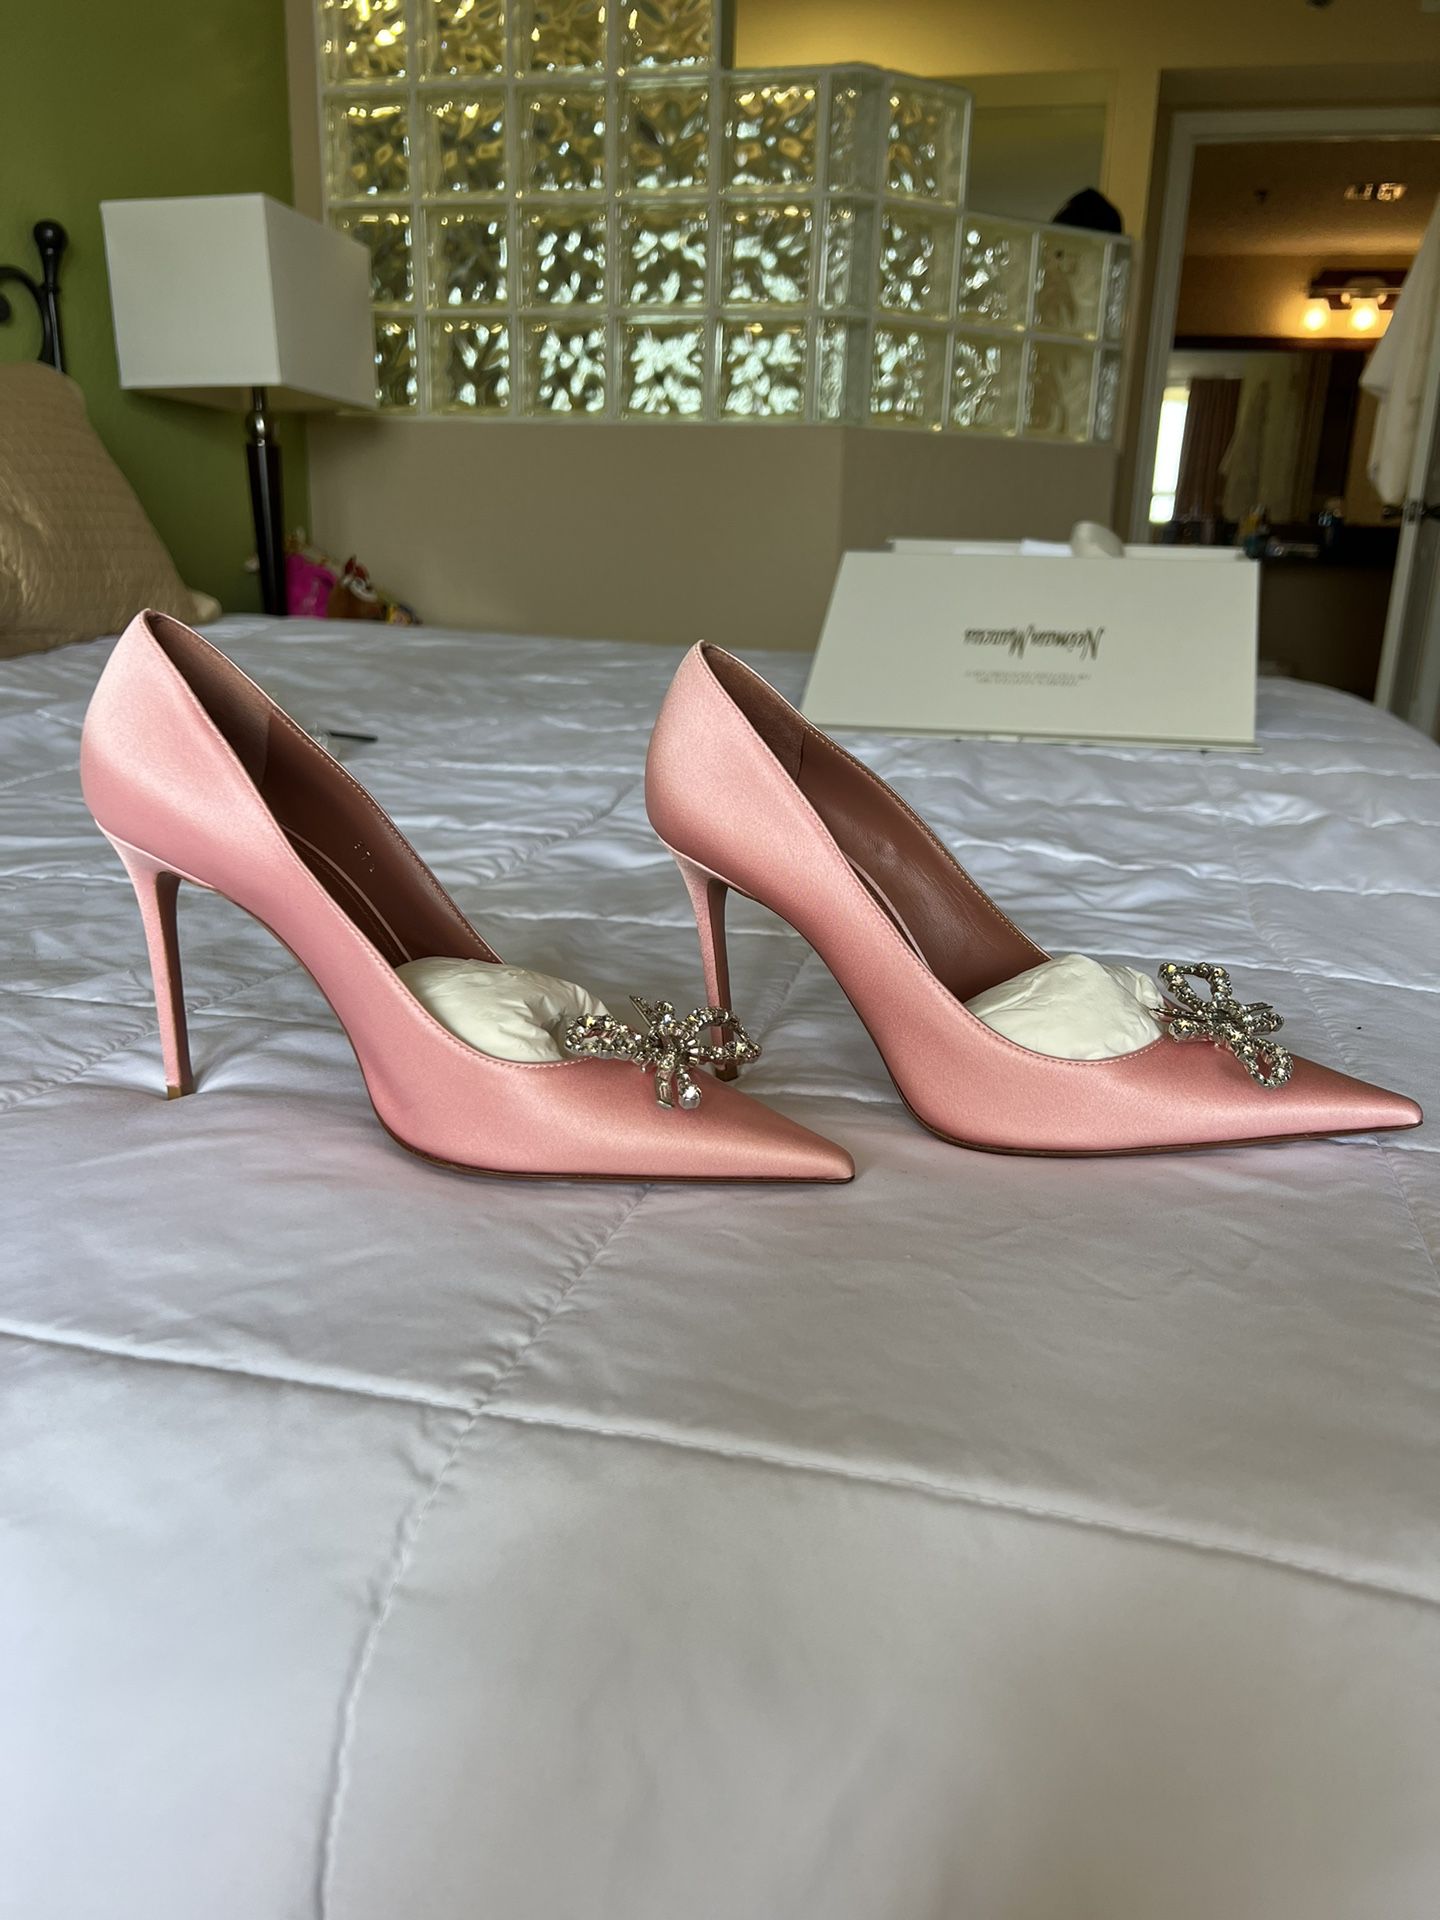 Amina Muaddi Pink Heels Size 7.5 